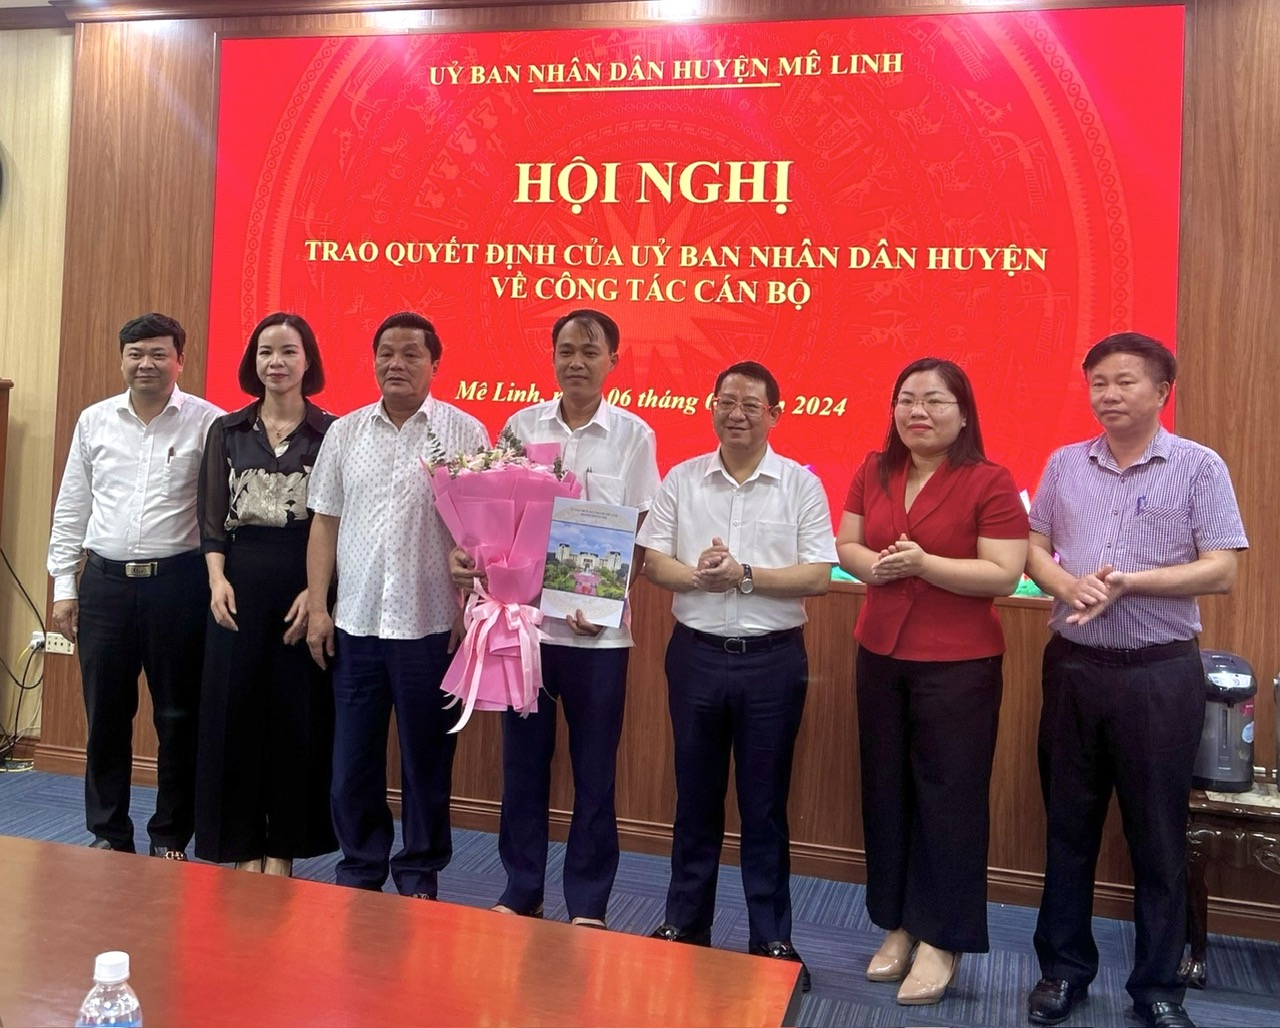 UBND huyện Mê Linh công bố và trao Quyết định điều động, bổ nhiệm Trưởng phòng Nội vụ Huyện- Ảnh 1.